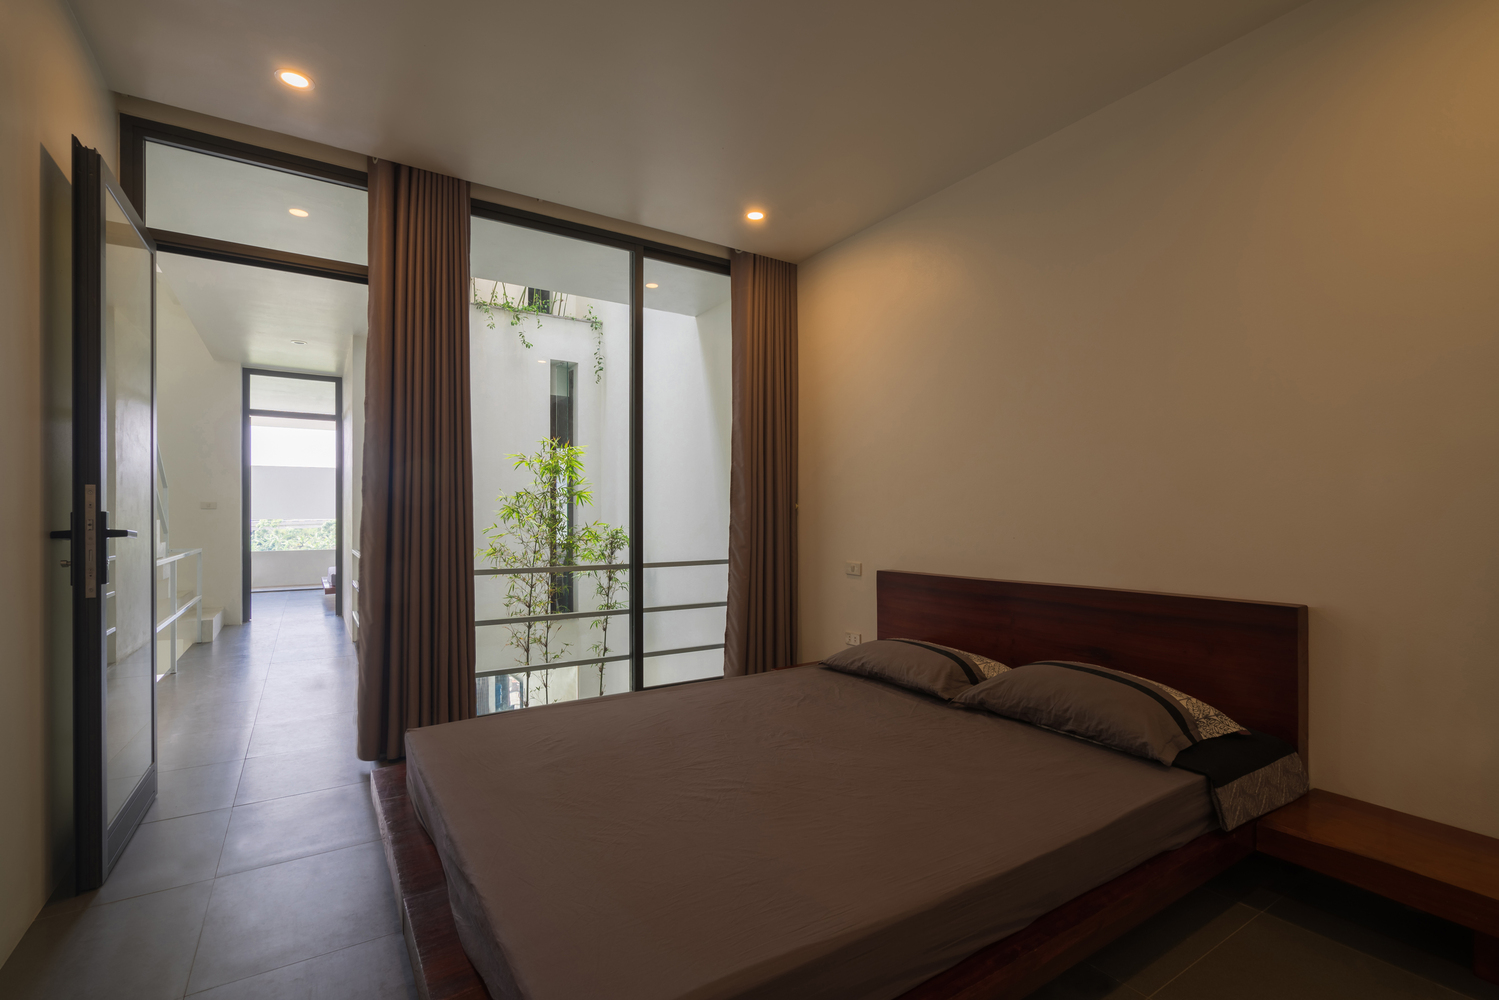 Phòng ngủ có thiết kế tối giản, sử dụng bảng màu trung tính nhằm tạo cảm giác thư giãn, giúp người dùng ngủ ngon giấc hơn.